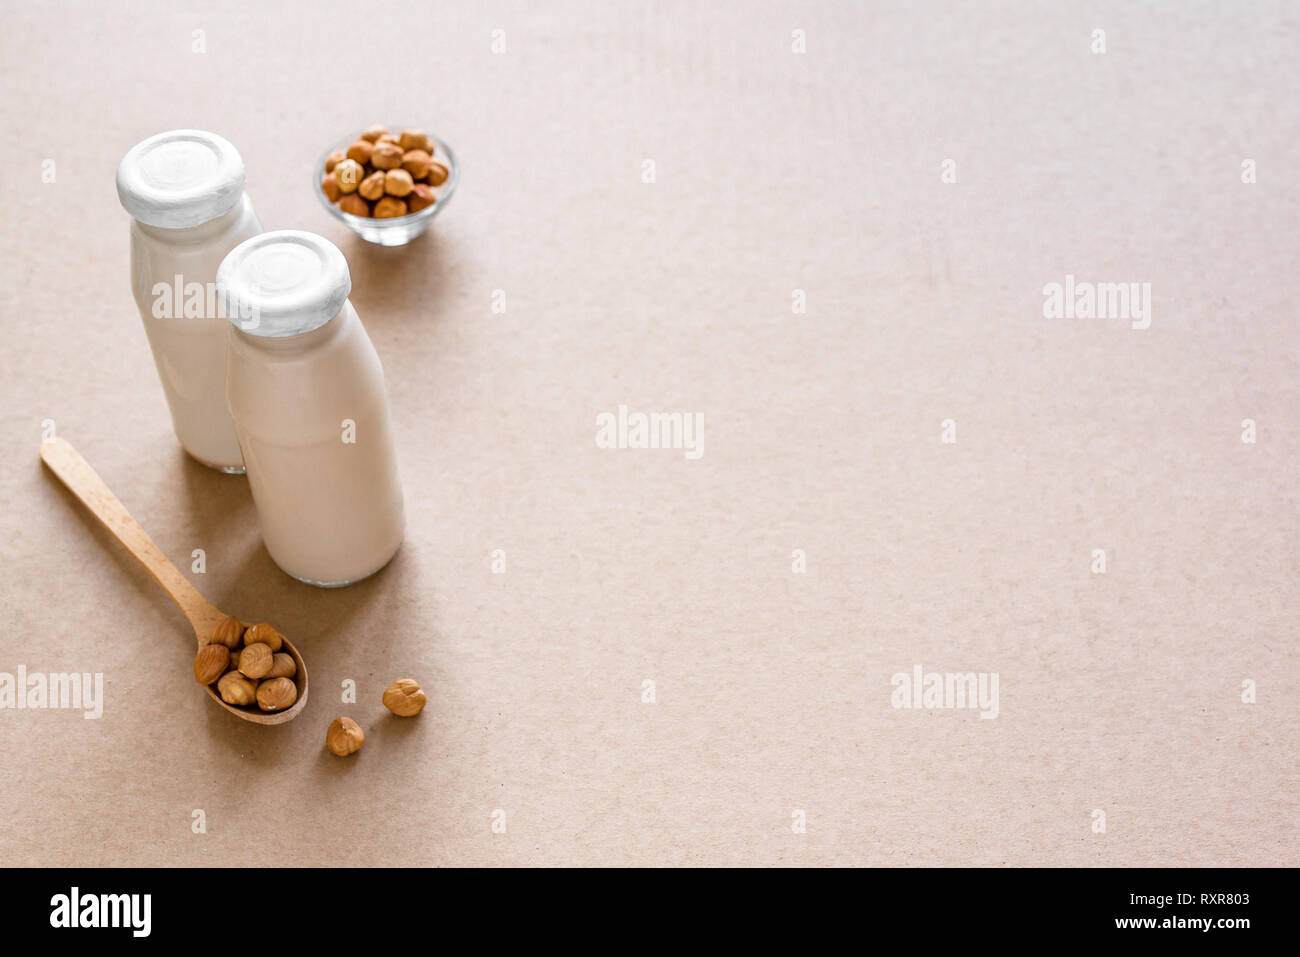 Haselnuss Milch auf beigem Hintergrund, kopieren. Gesunde vegane alternative Ersatz ohne Milchprodukte Getränk - Flasche haselnuss Milch. Stockfoto